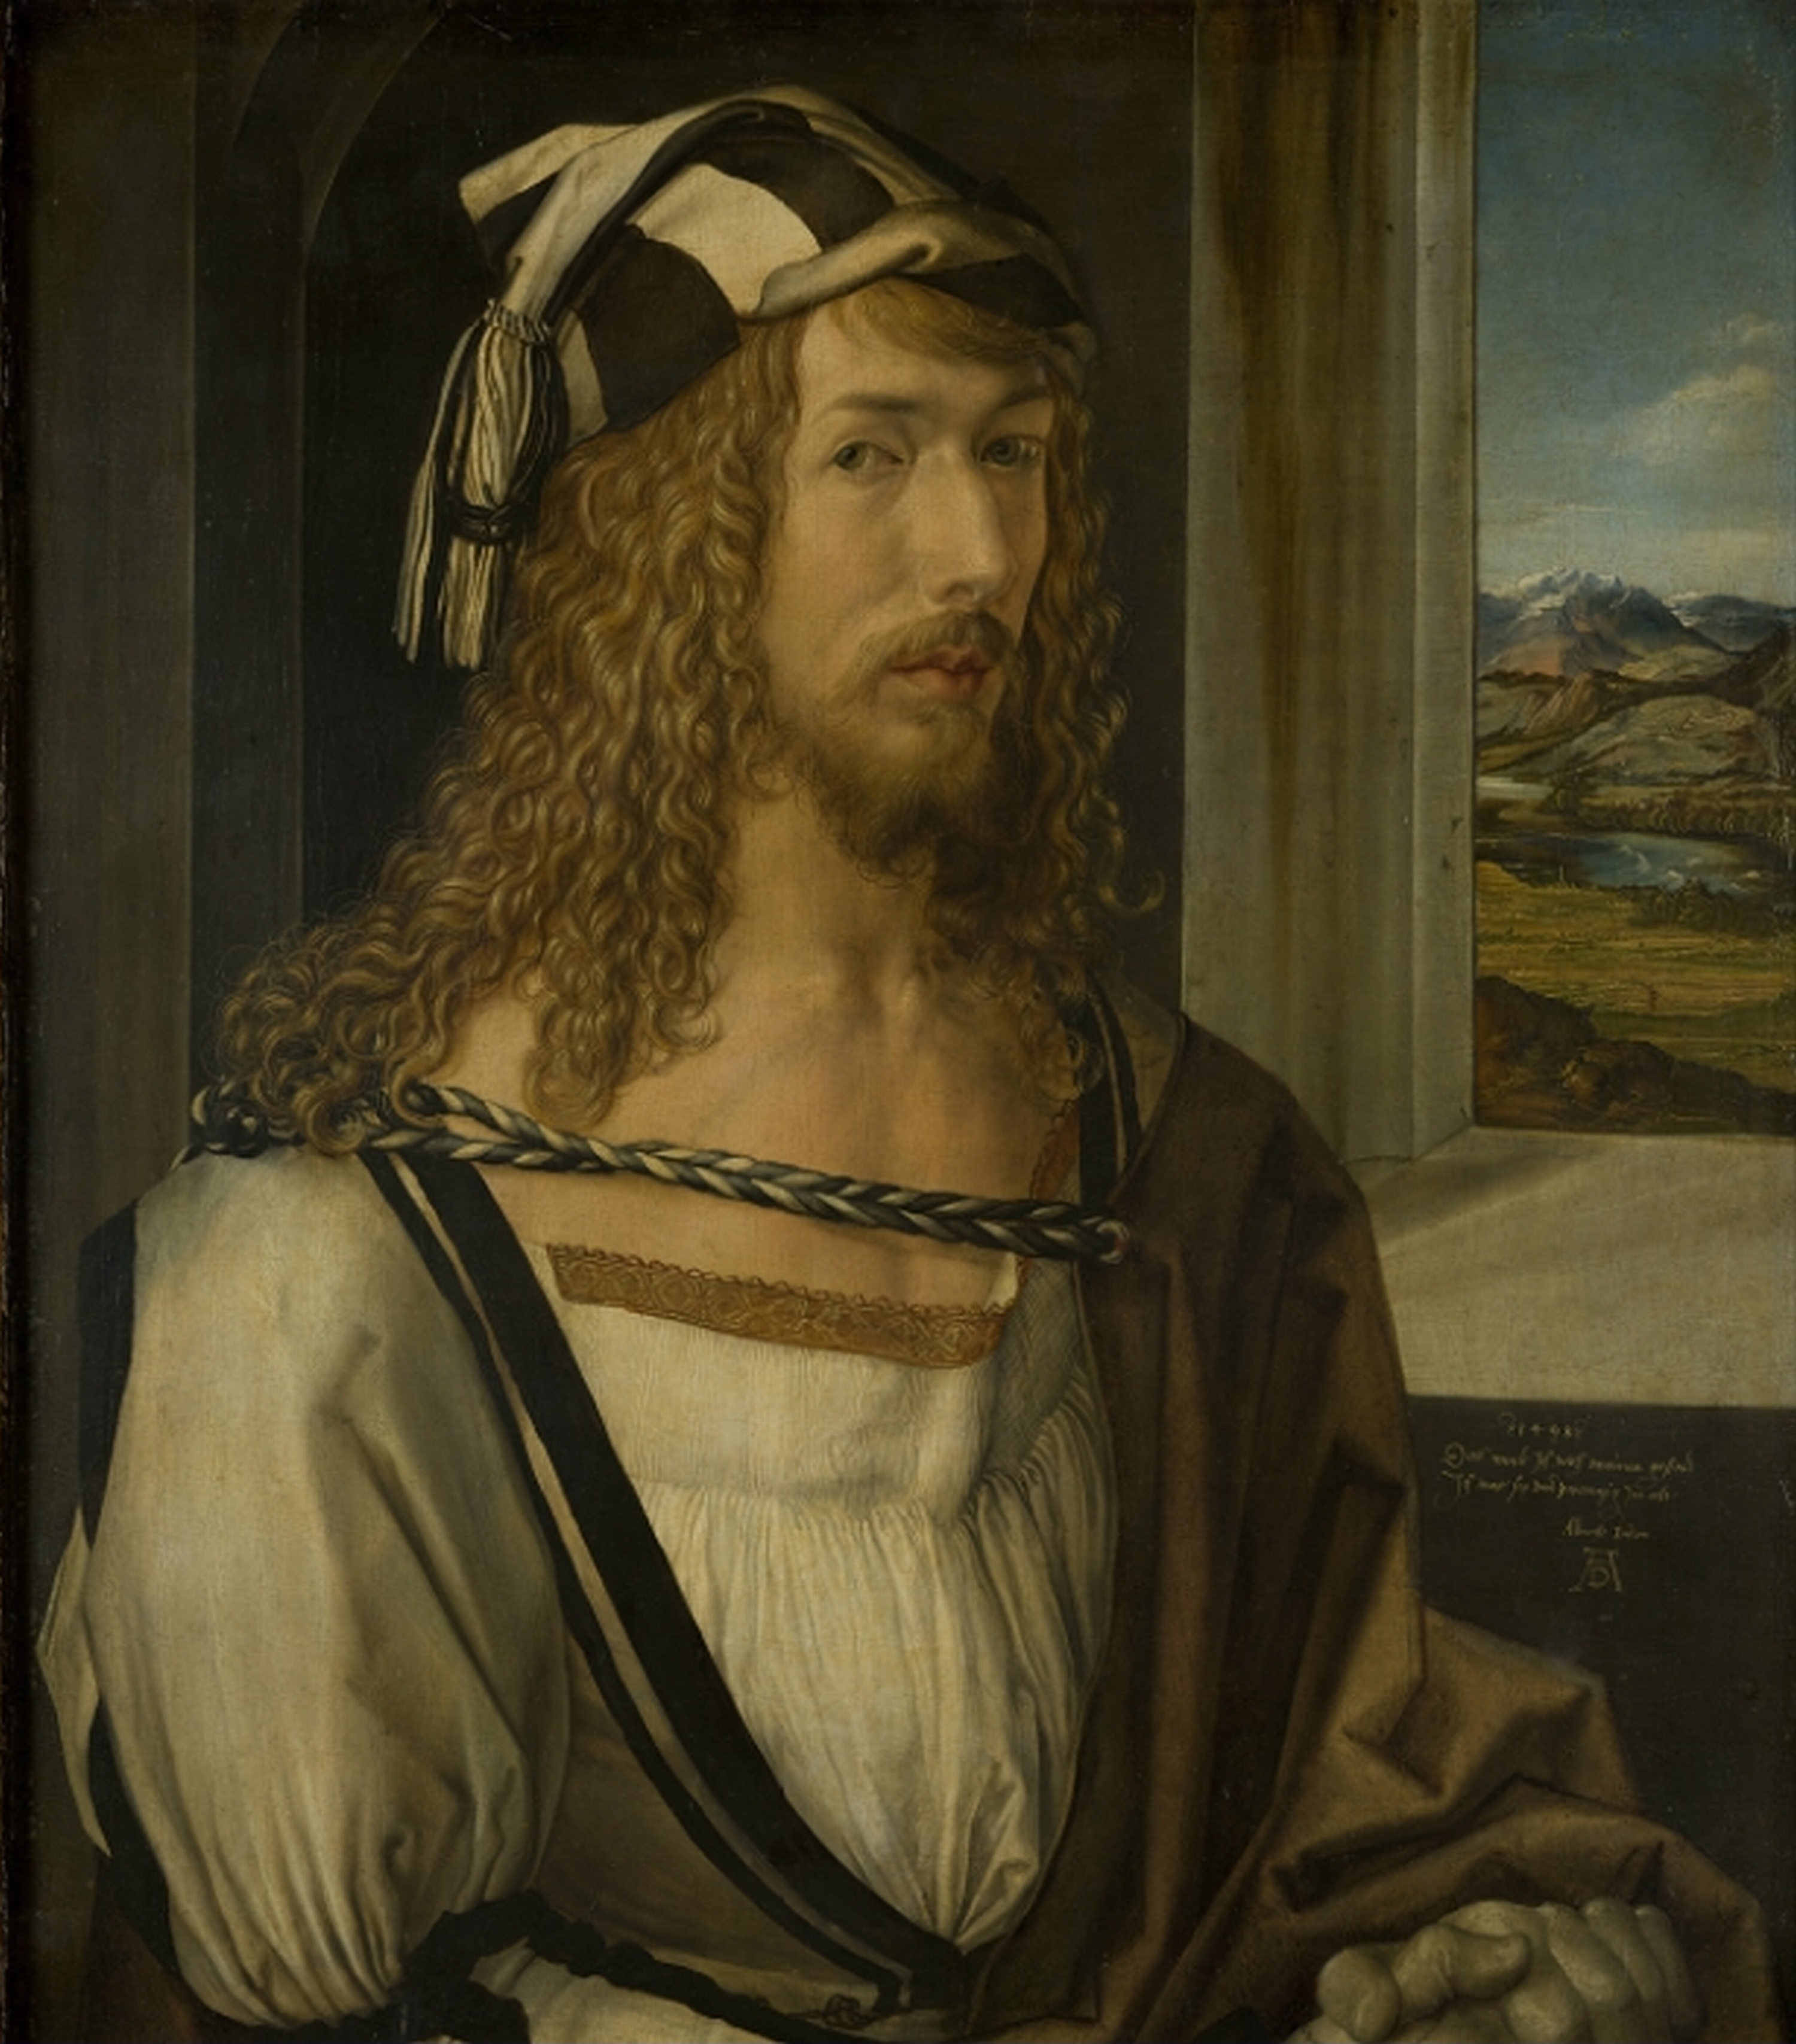 Άλμπρεχτ Ντύρερ - 21 Μαϊου, 1471 - 6 Απριλίου, 1528